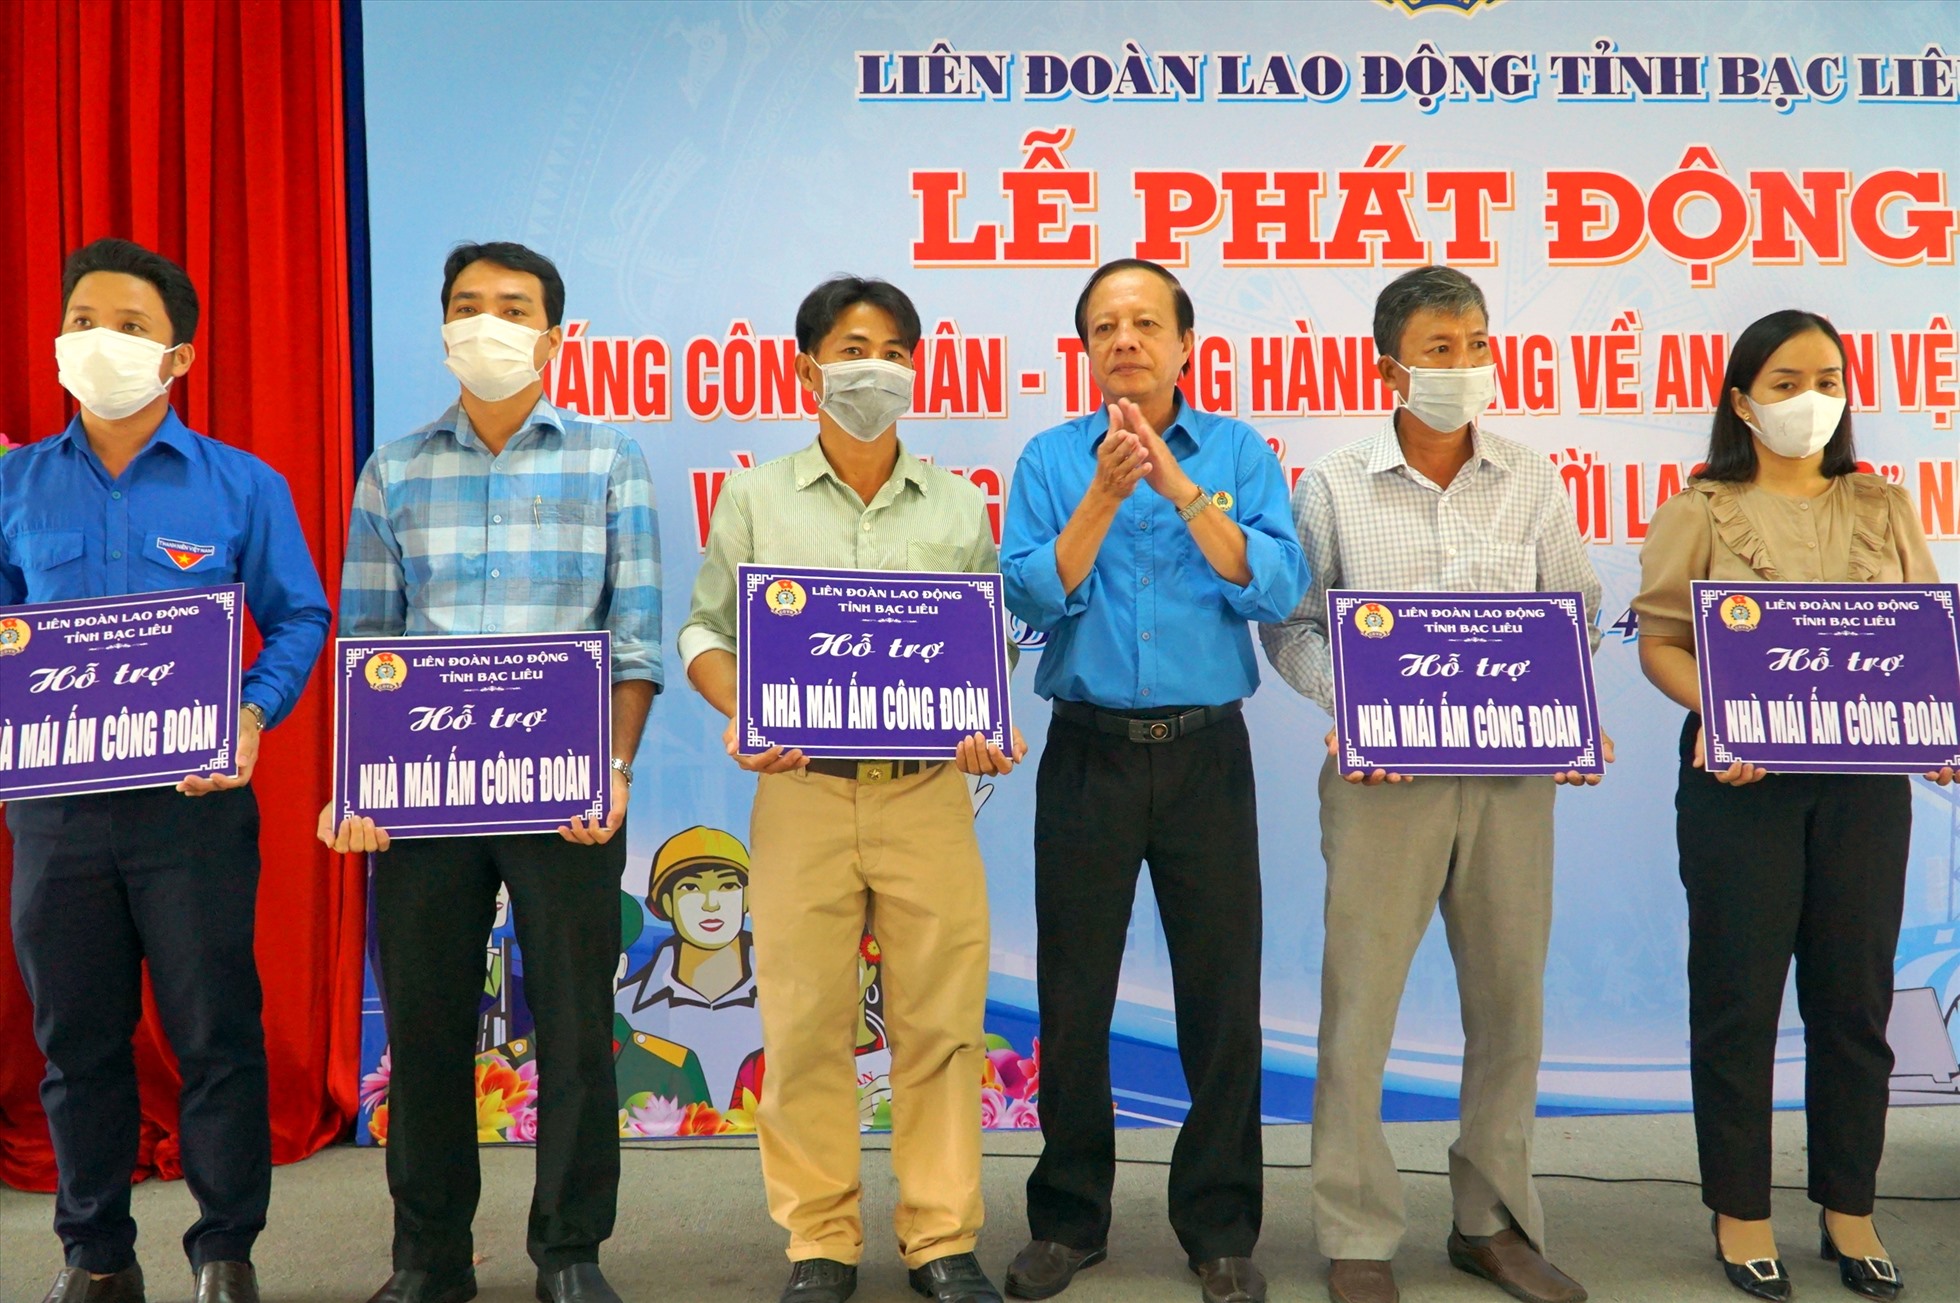 Tại buổi phát động Tháng công nhân, LĐLĐ tỉnh Bạc Liêu cũng trao 5 Mái ấm công đoàn cho đoàn viên công đoàn khó khăn về nhà ở. Ảnh: Nhật Hồ